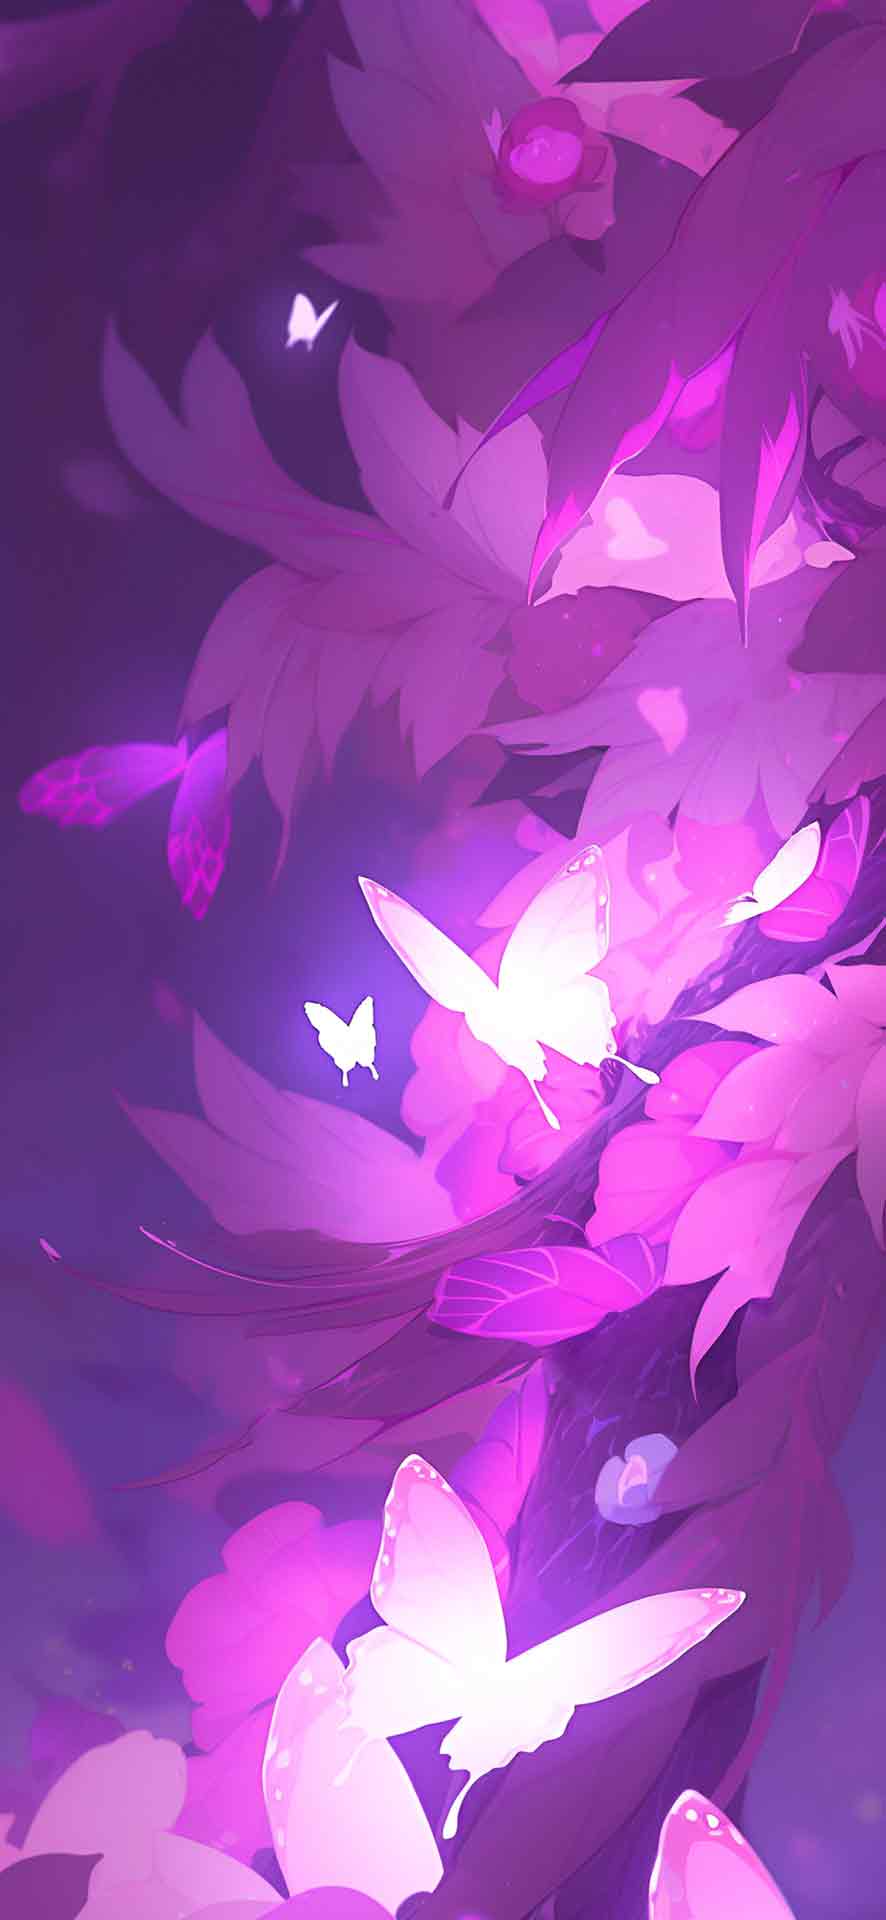 温柔的紫色美学艺术壁纸